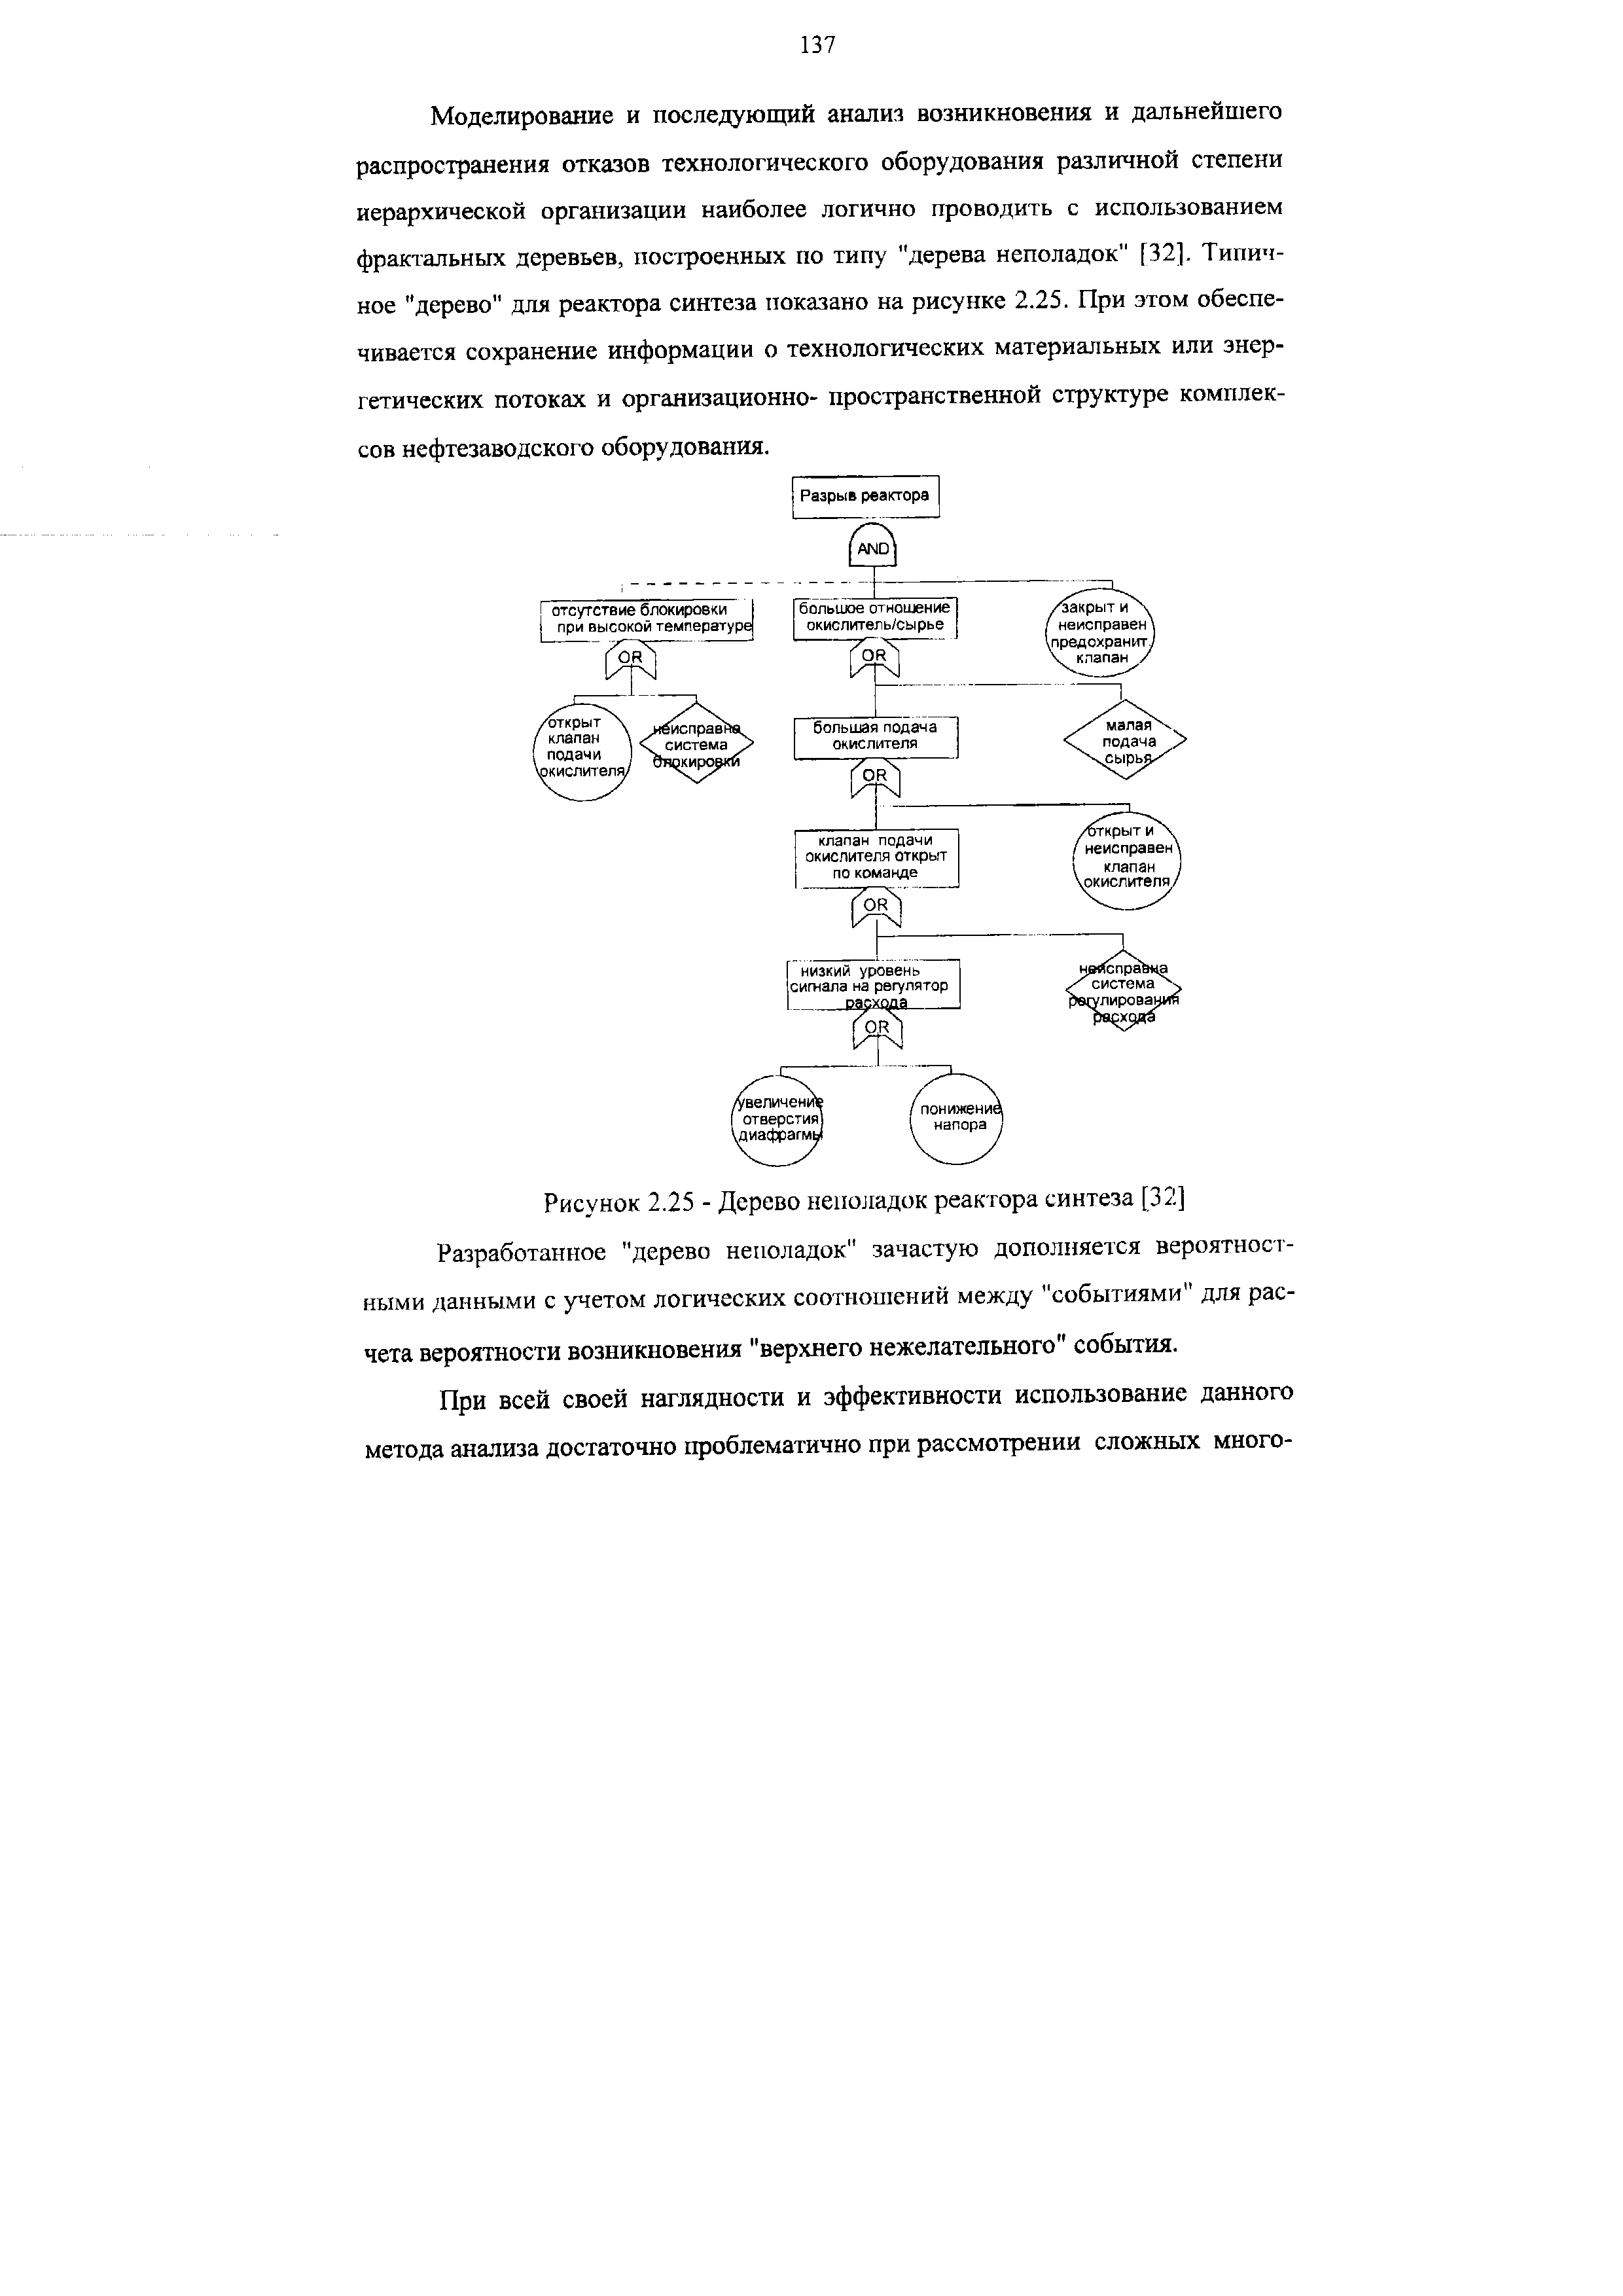 Рисунок 2.25 - Дерево неполадок реактора синтеза [32] Разработанное "дерево неполадок" зачастую дополняется вероятностными данными с учетом логических соотношений между "событиями" для расчета вероятности возникновения "верхнего нежелательного" события.
